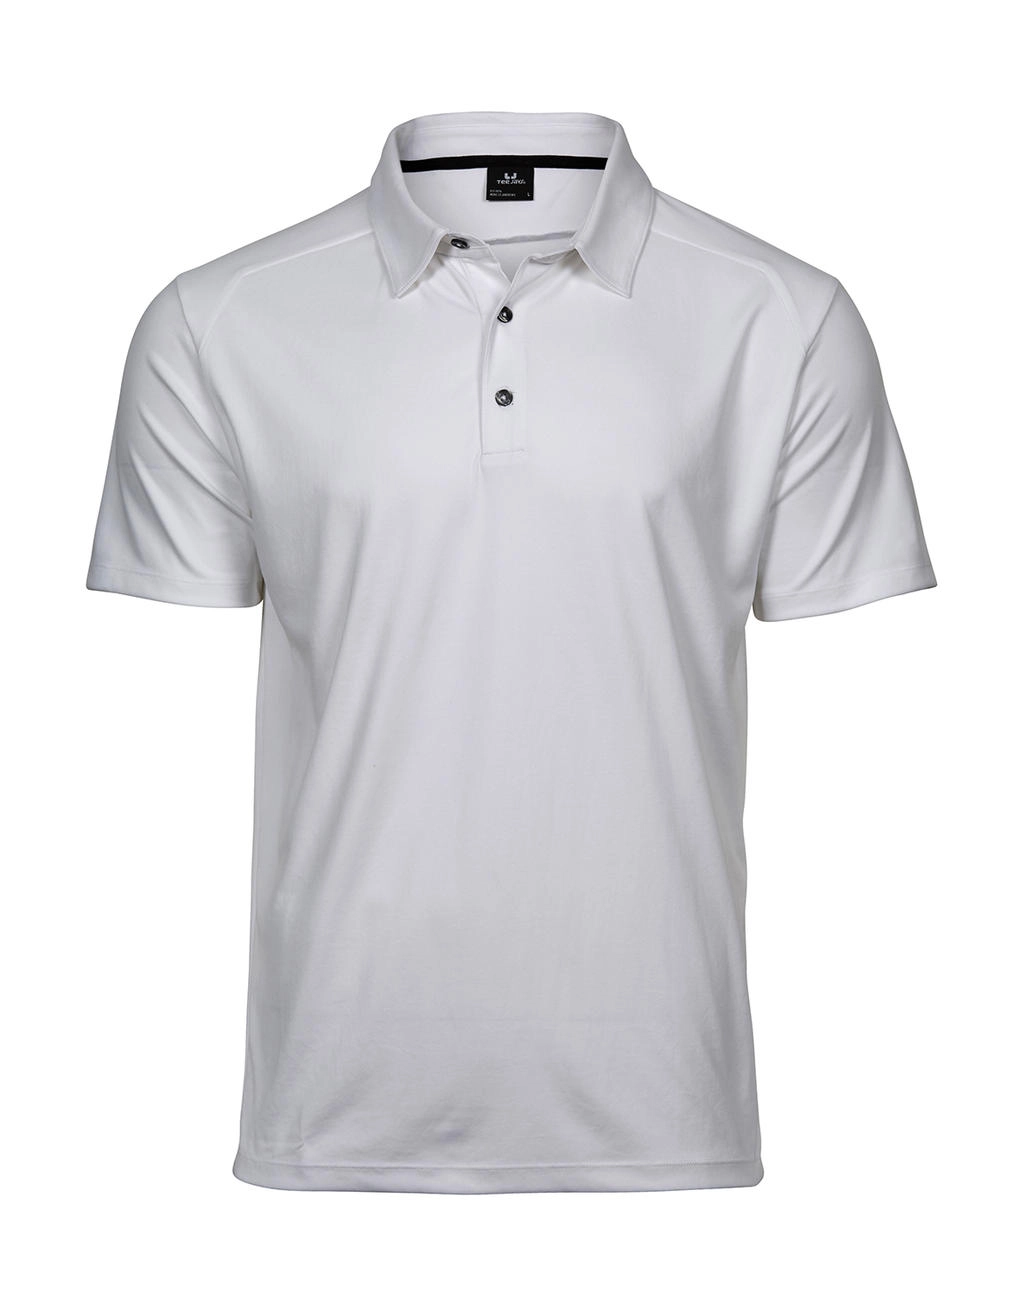 Luxury Sport Polo zum Besticken und Bedrucken in der Farbe White mit Ihren Logo, Schriftzug oder Motiv.